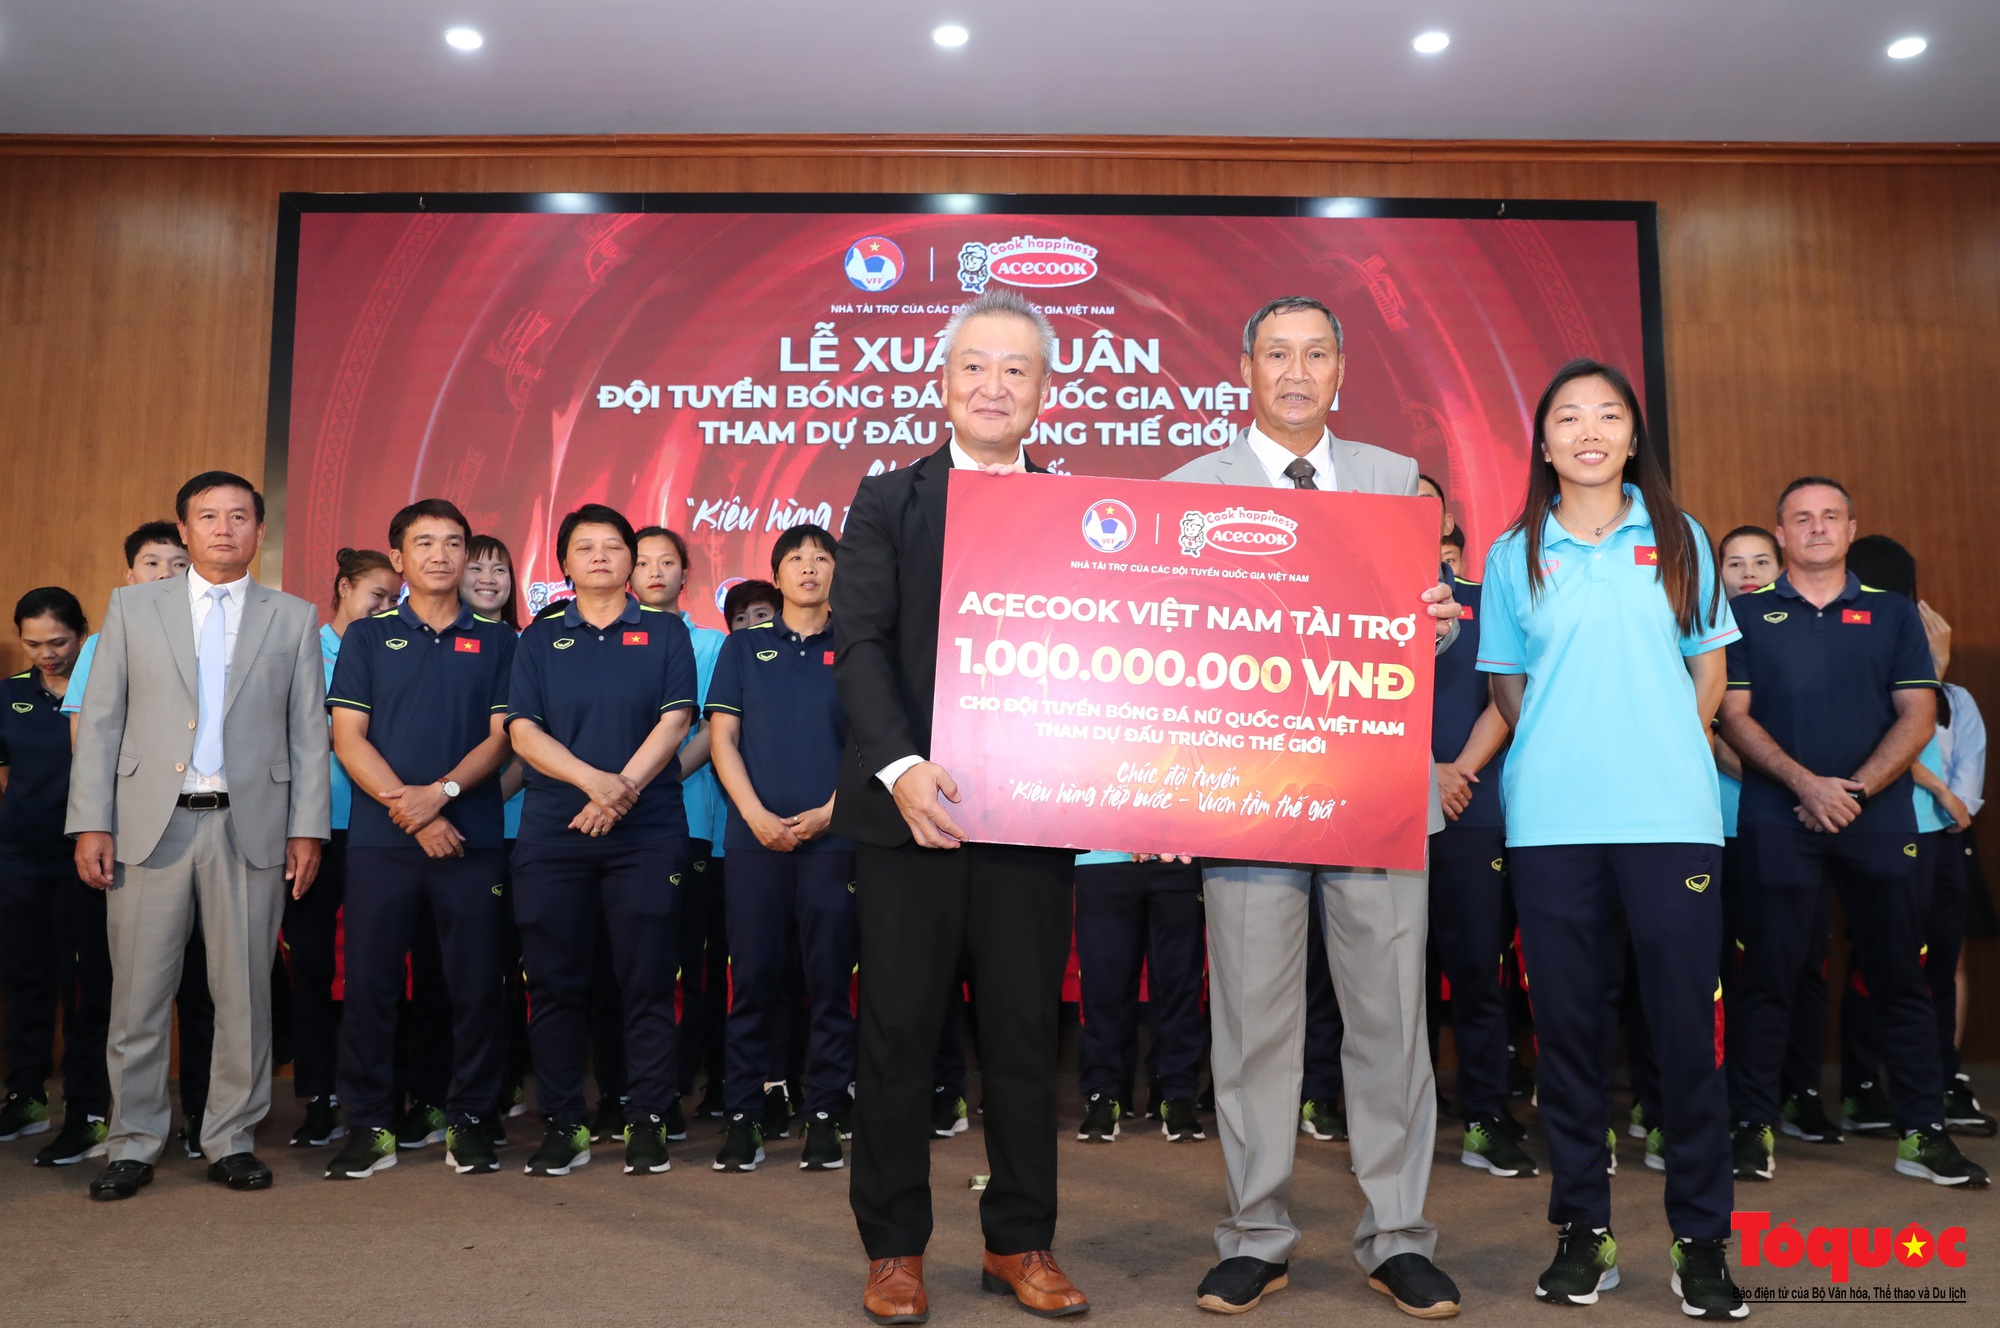 Thứ trưởng Hoàng Đạo Cương tin tưởng đội tuyển nữ Việt Nam cũng sẽ thi đấu tự tin, vượt qua chính mình tại VCK FIFA World Cup nữ 2023 - Ảnh 2.